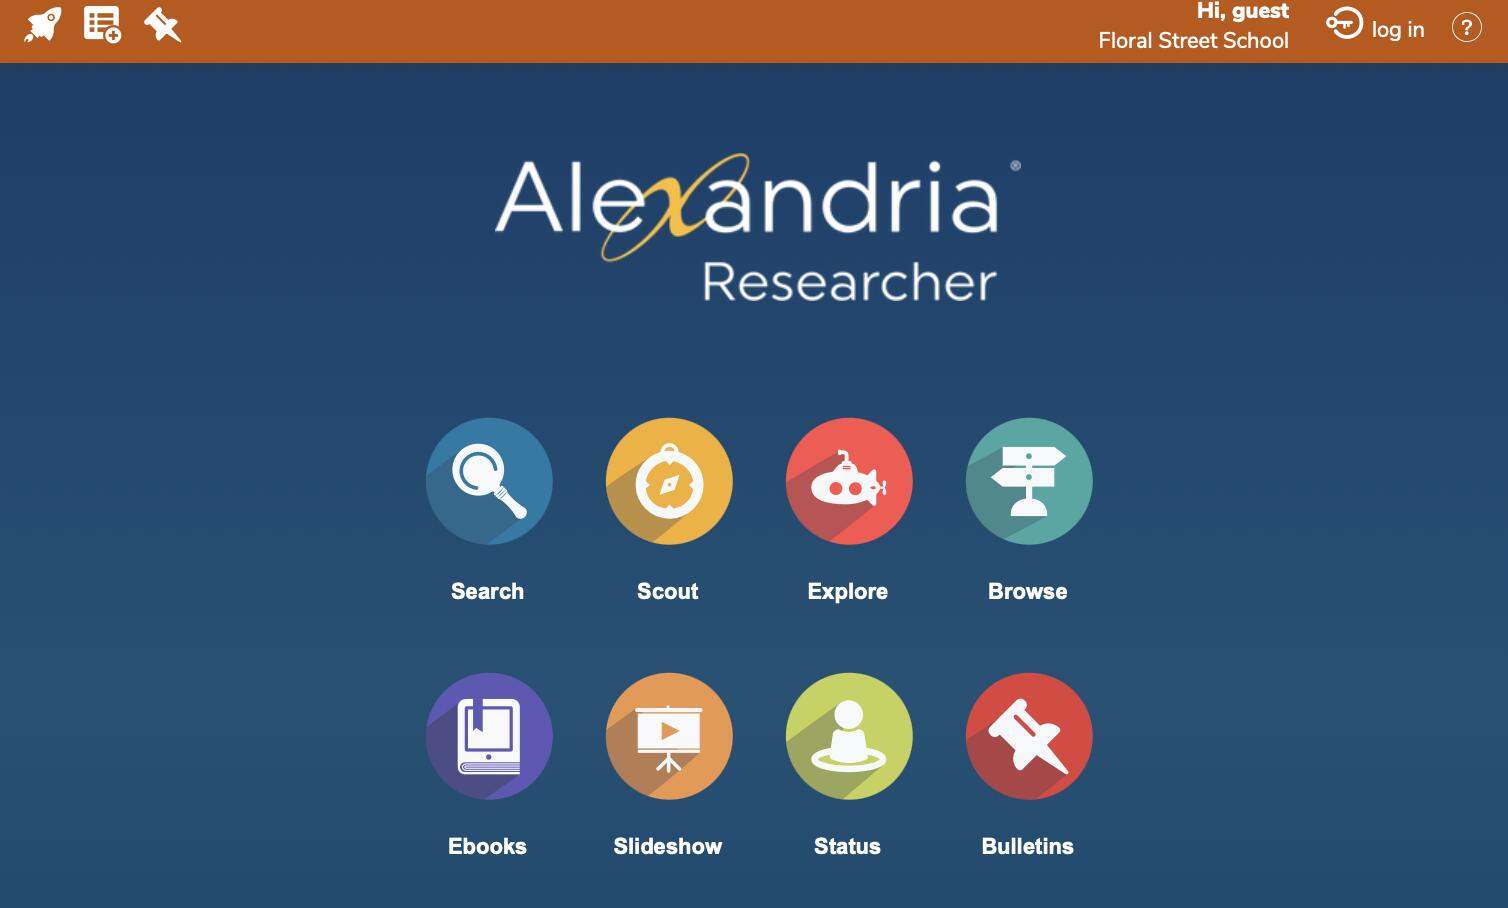 Alexandria Researcher Menu buttons